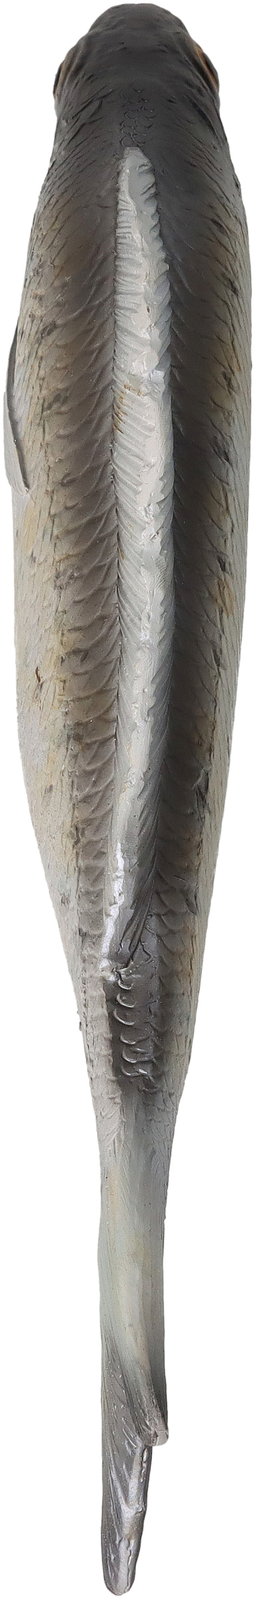 Ornament Fish Polyresin Grey 27.5x3.1x8.1cm